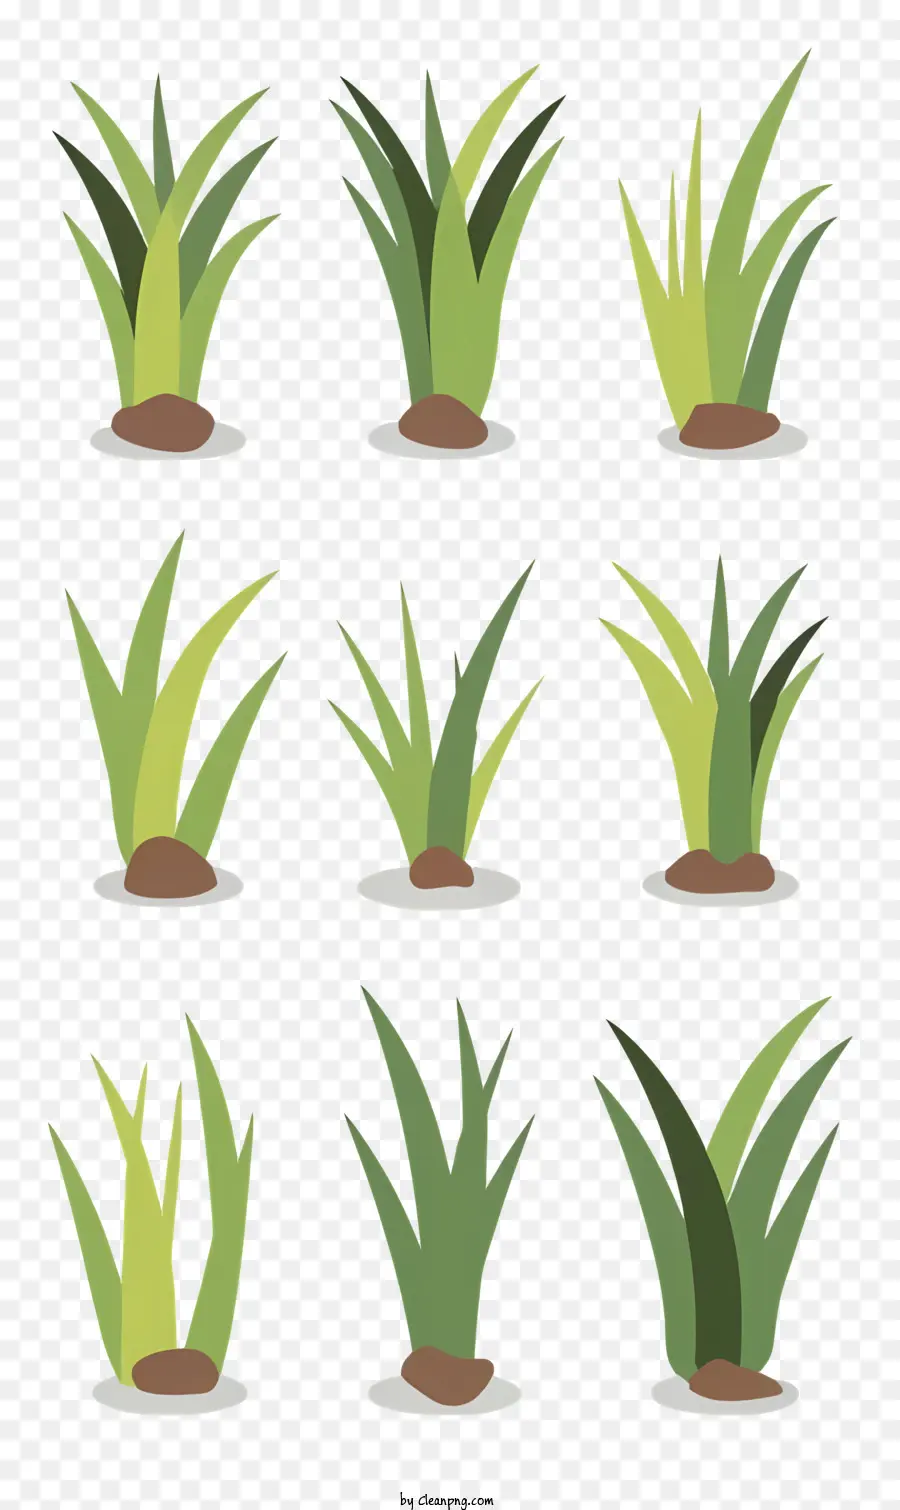 grüne Pflanzen Bodenpflanzentypen Formengrößen - Verschiedene grüne Pflanzen, die in visuell ansprechendes Netz angeordnet sind